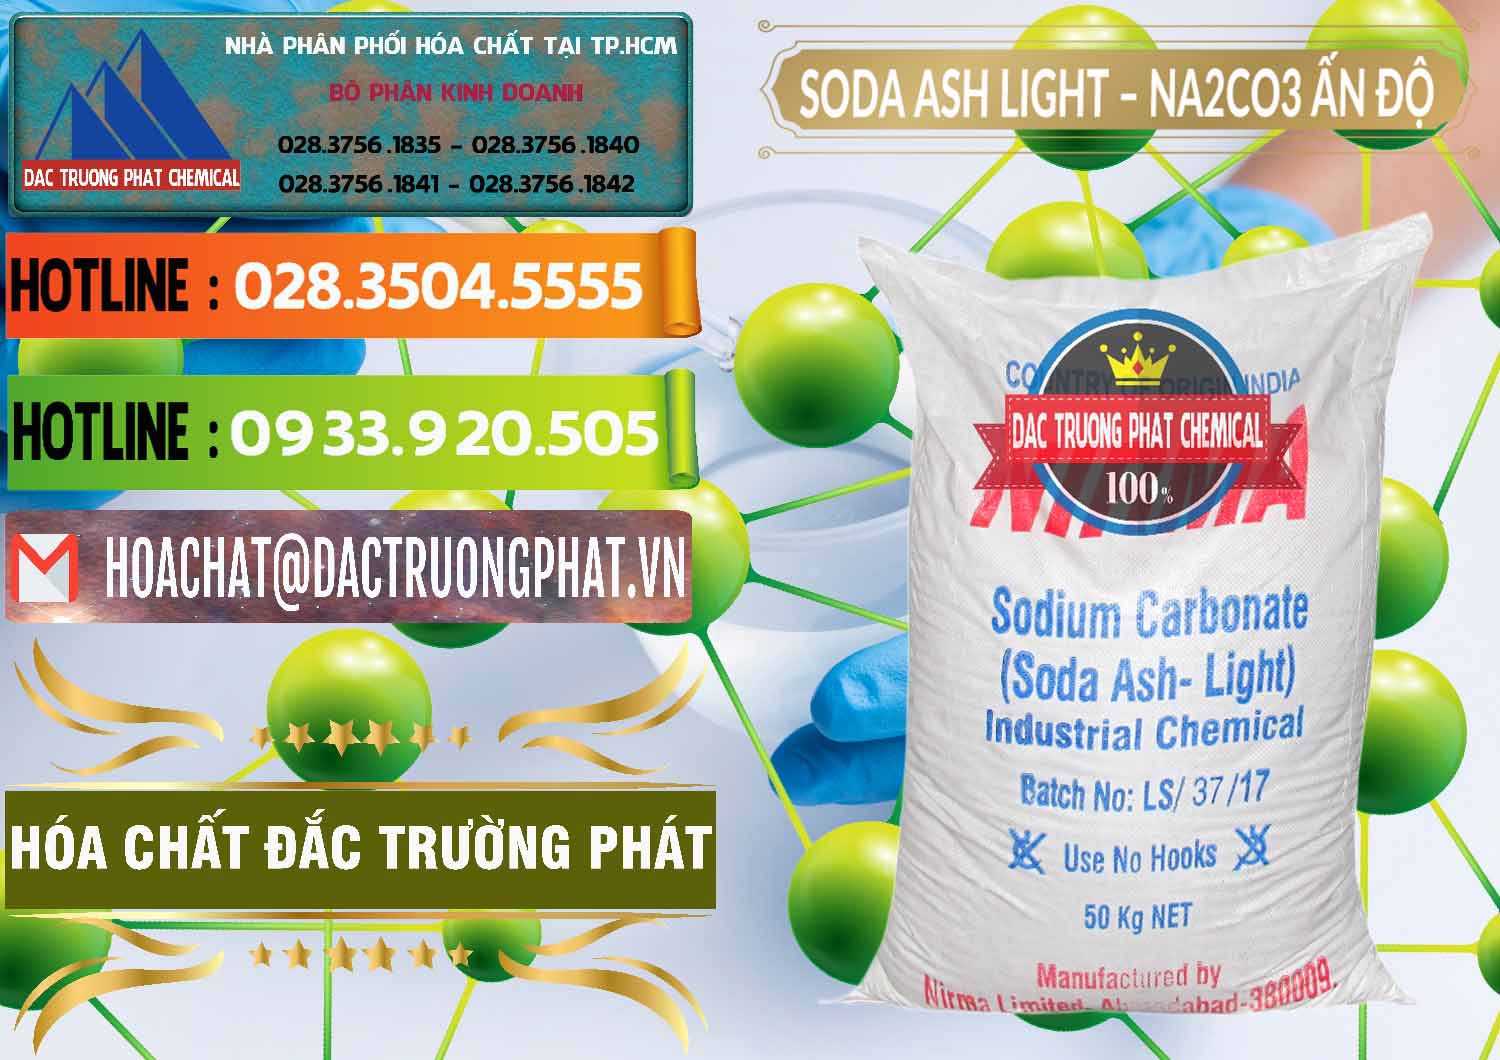 Cty chuyên bán và cung ứng Soda Ash Light - NA2CO3 Nirma Ấn Độ India - 0125 - Đơn vị kinh doanh _ phân phối hóa chất tại TP.HCM - cungcaphoachat.com.vn